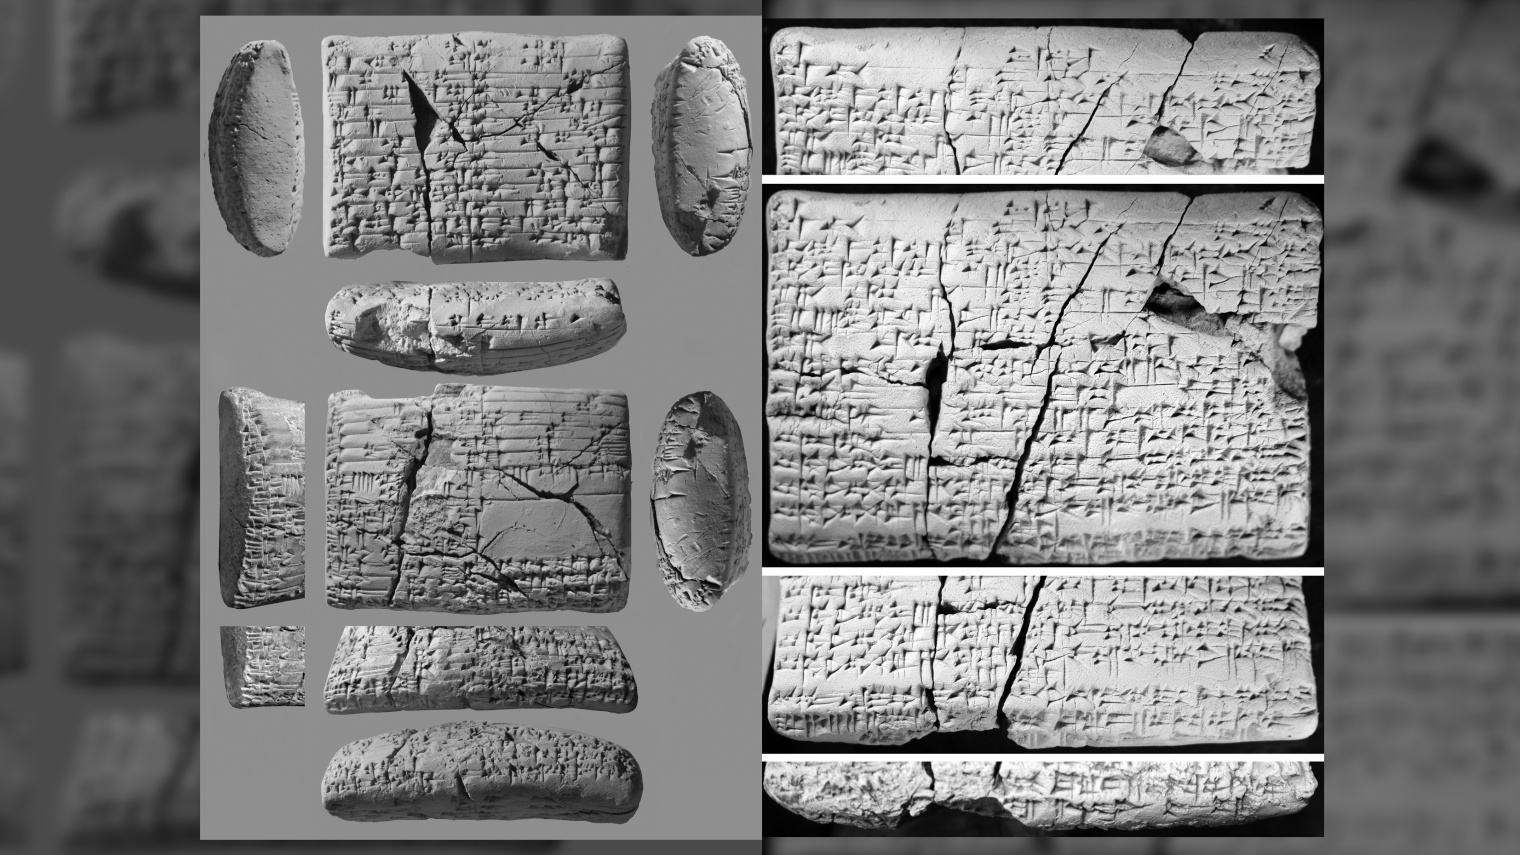 Tabletat 4,000-vjeçare zbulojnë përkthime për gjuhën e 'humbur', duke përfshirë një këngë dashurie.